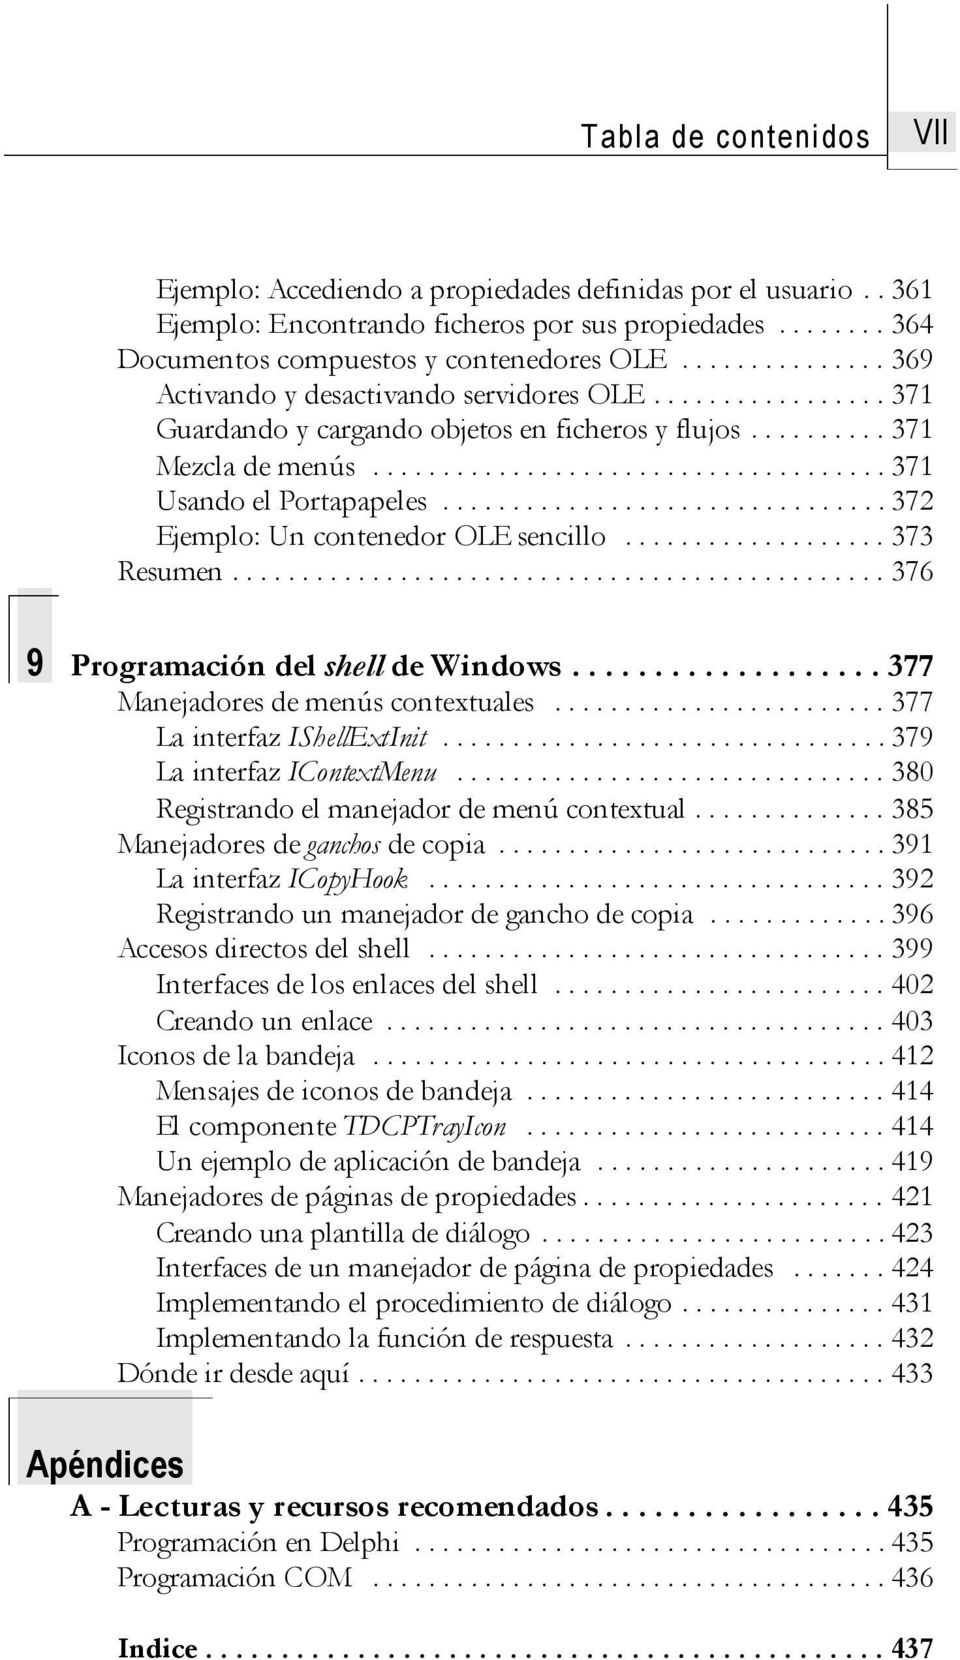 .. 373 Resumen....376 9 Programación del shell de Windows....377 Manejadores de menús contextuales...377 La interfaz IShellExtInit...379 La interfaz IContextMenu.